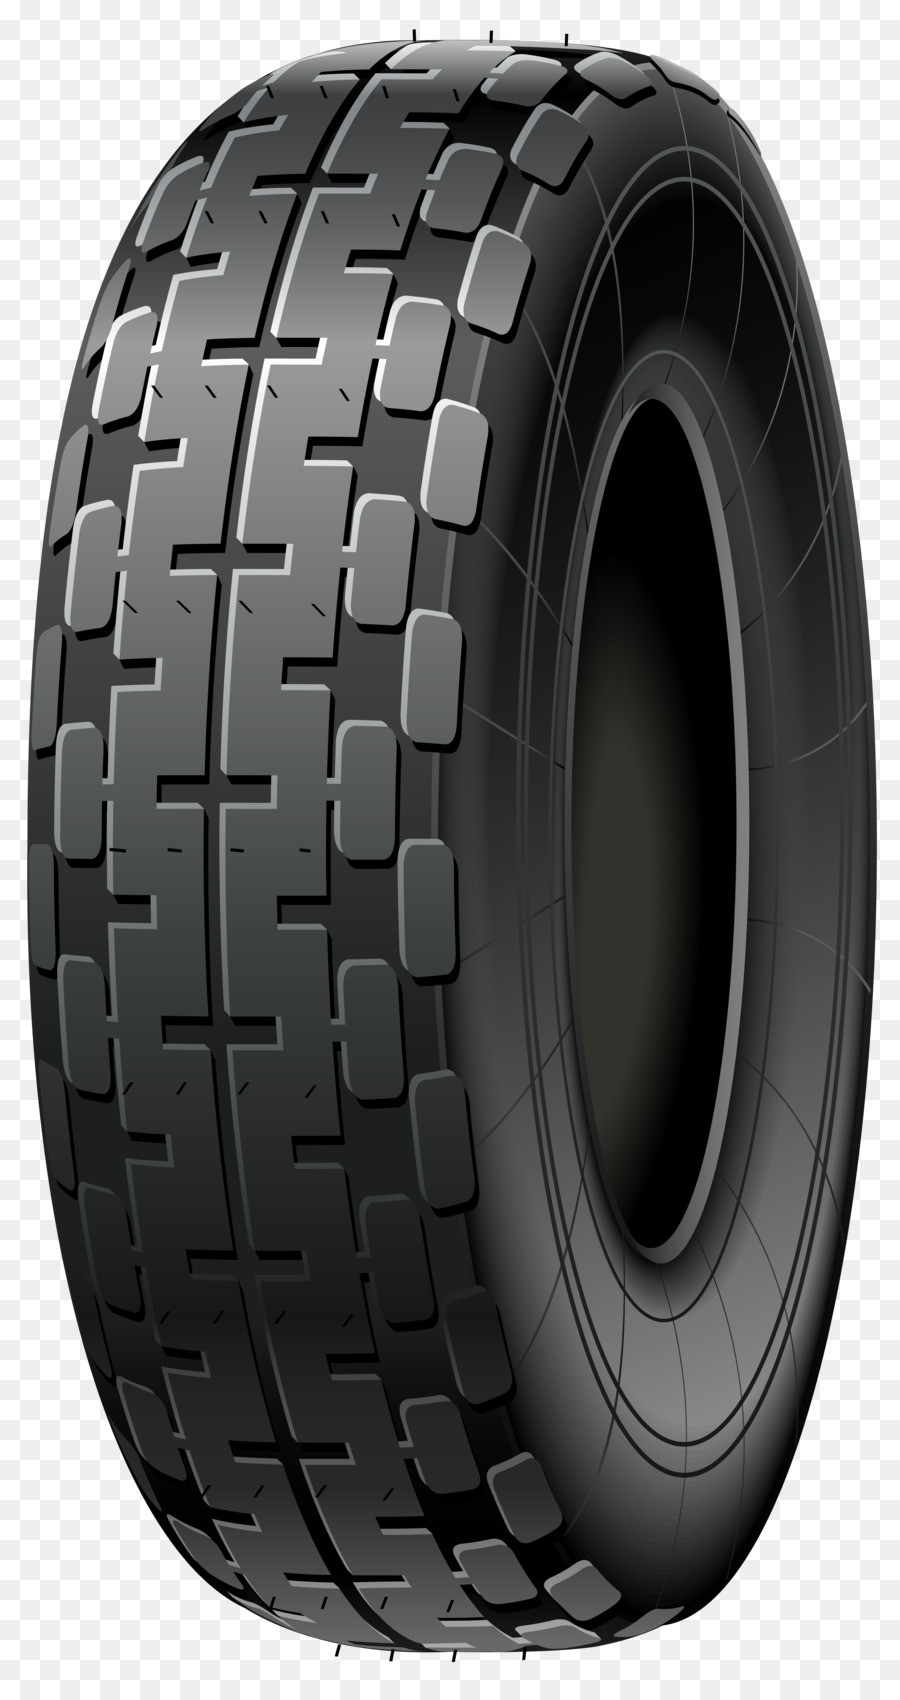 Auto Goodyear Tire und Rubber Company Tread - Auto